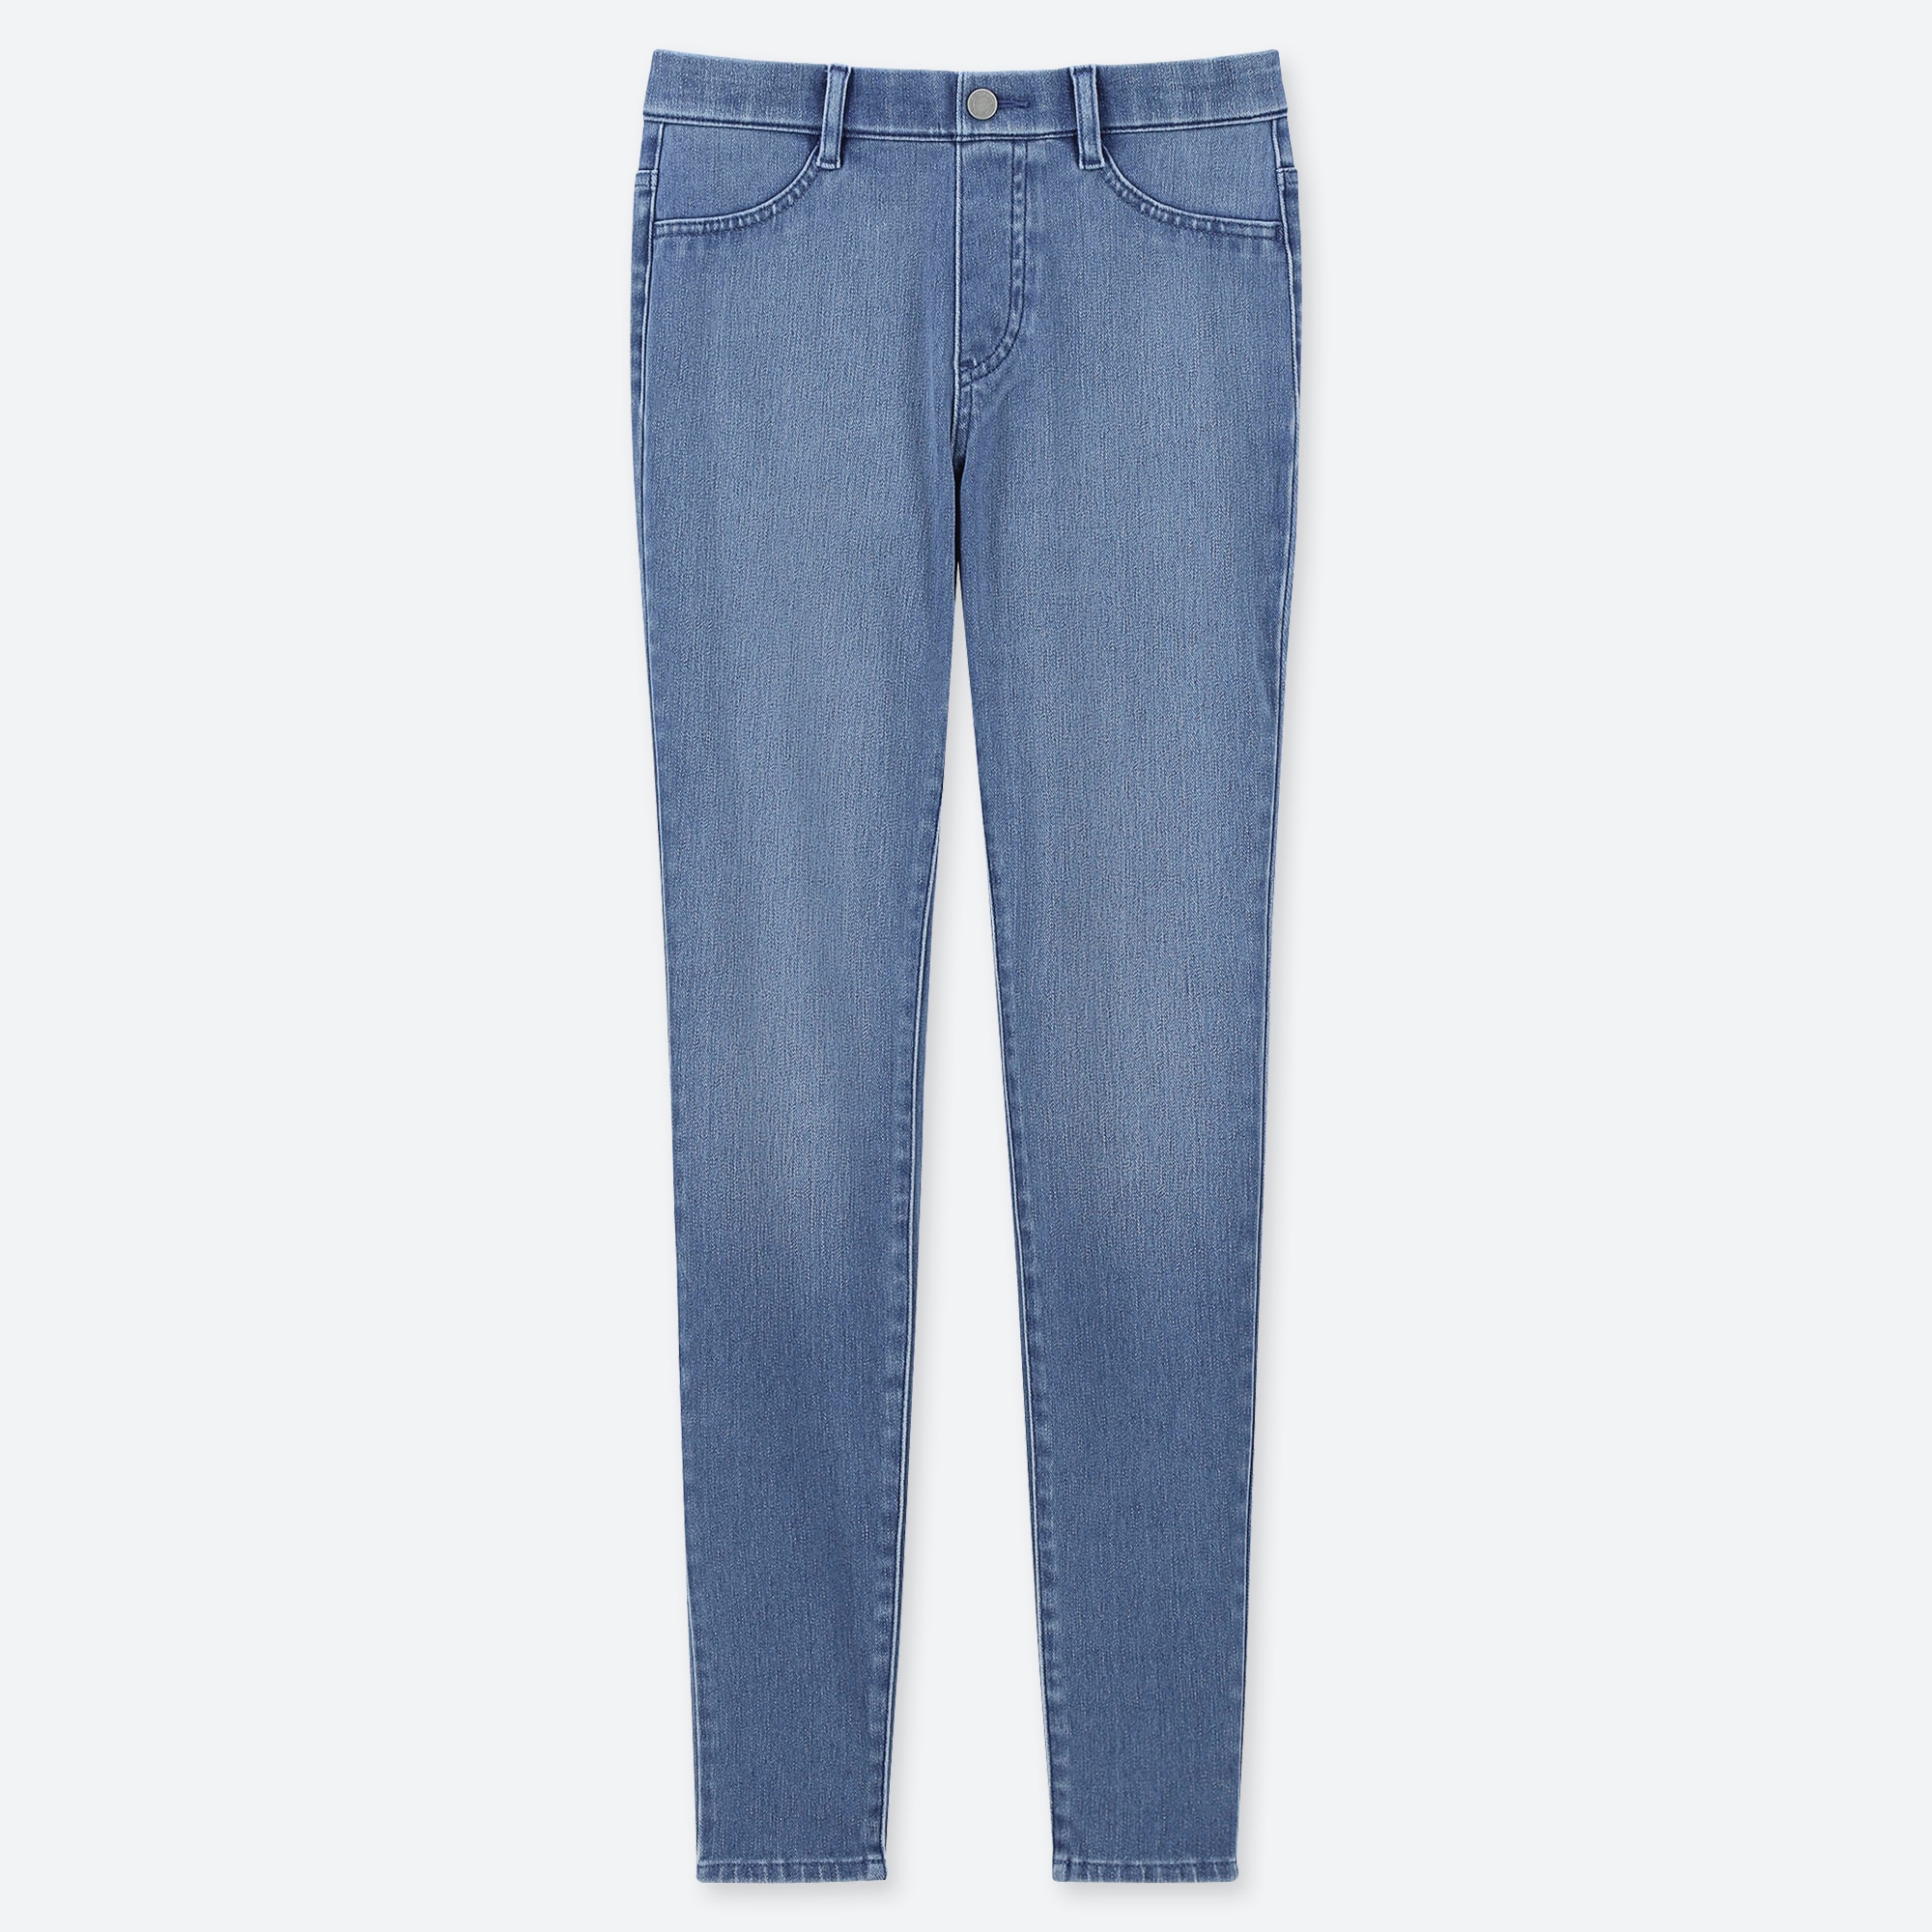 jeans leggings online